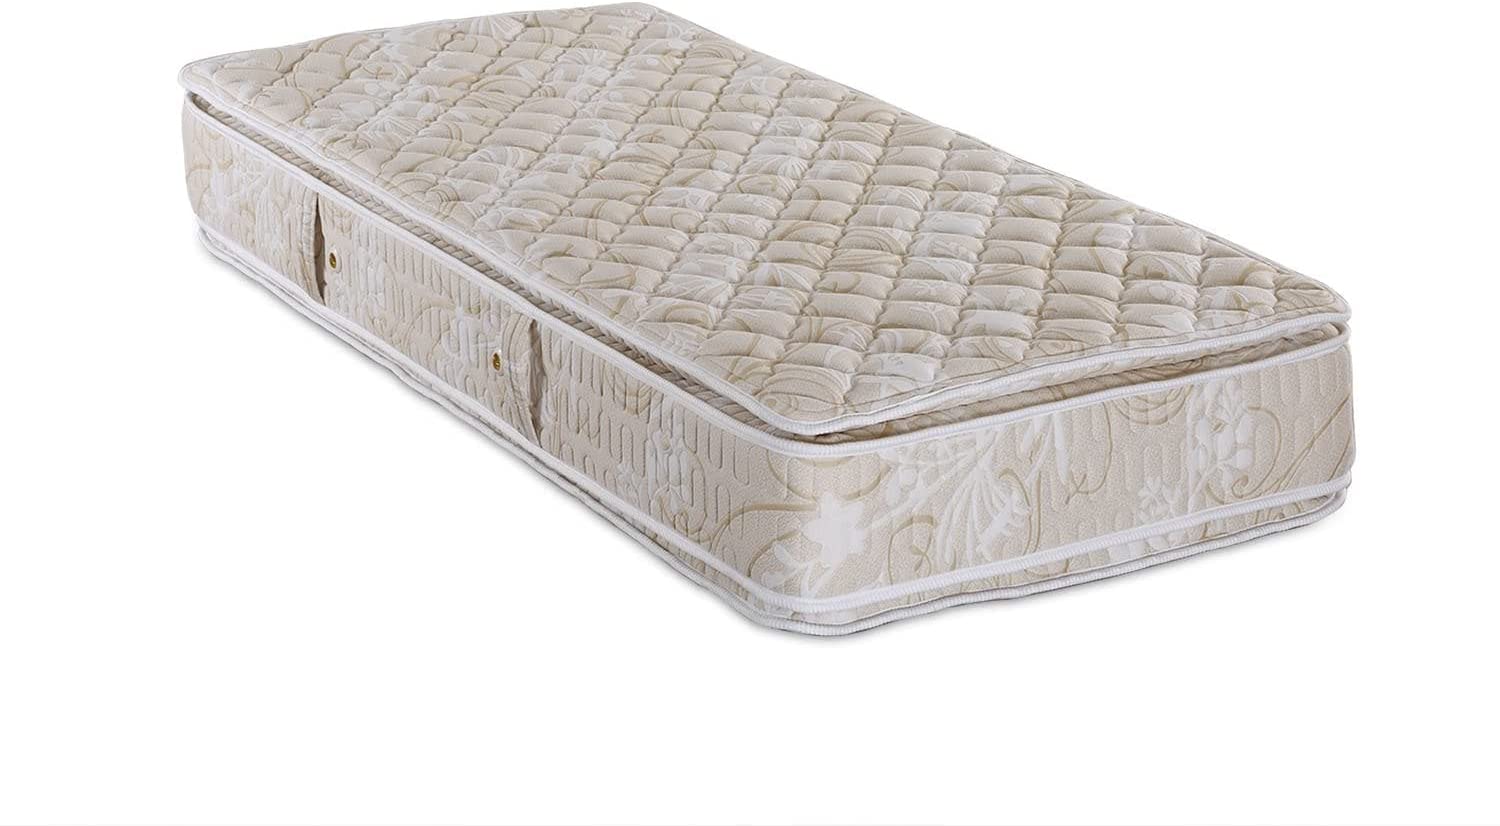 PAN Home Pan Alfa Plus Pillow Top Bonnell Mattress 30 cms - 100X190 080Symk100190